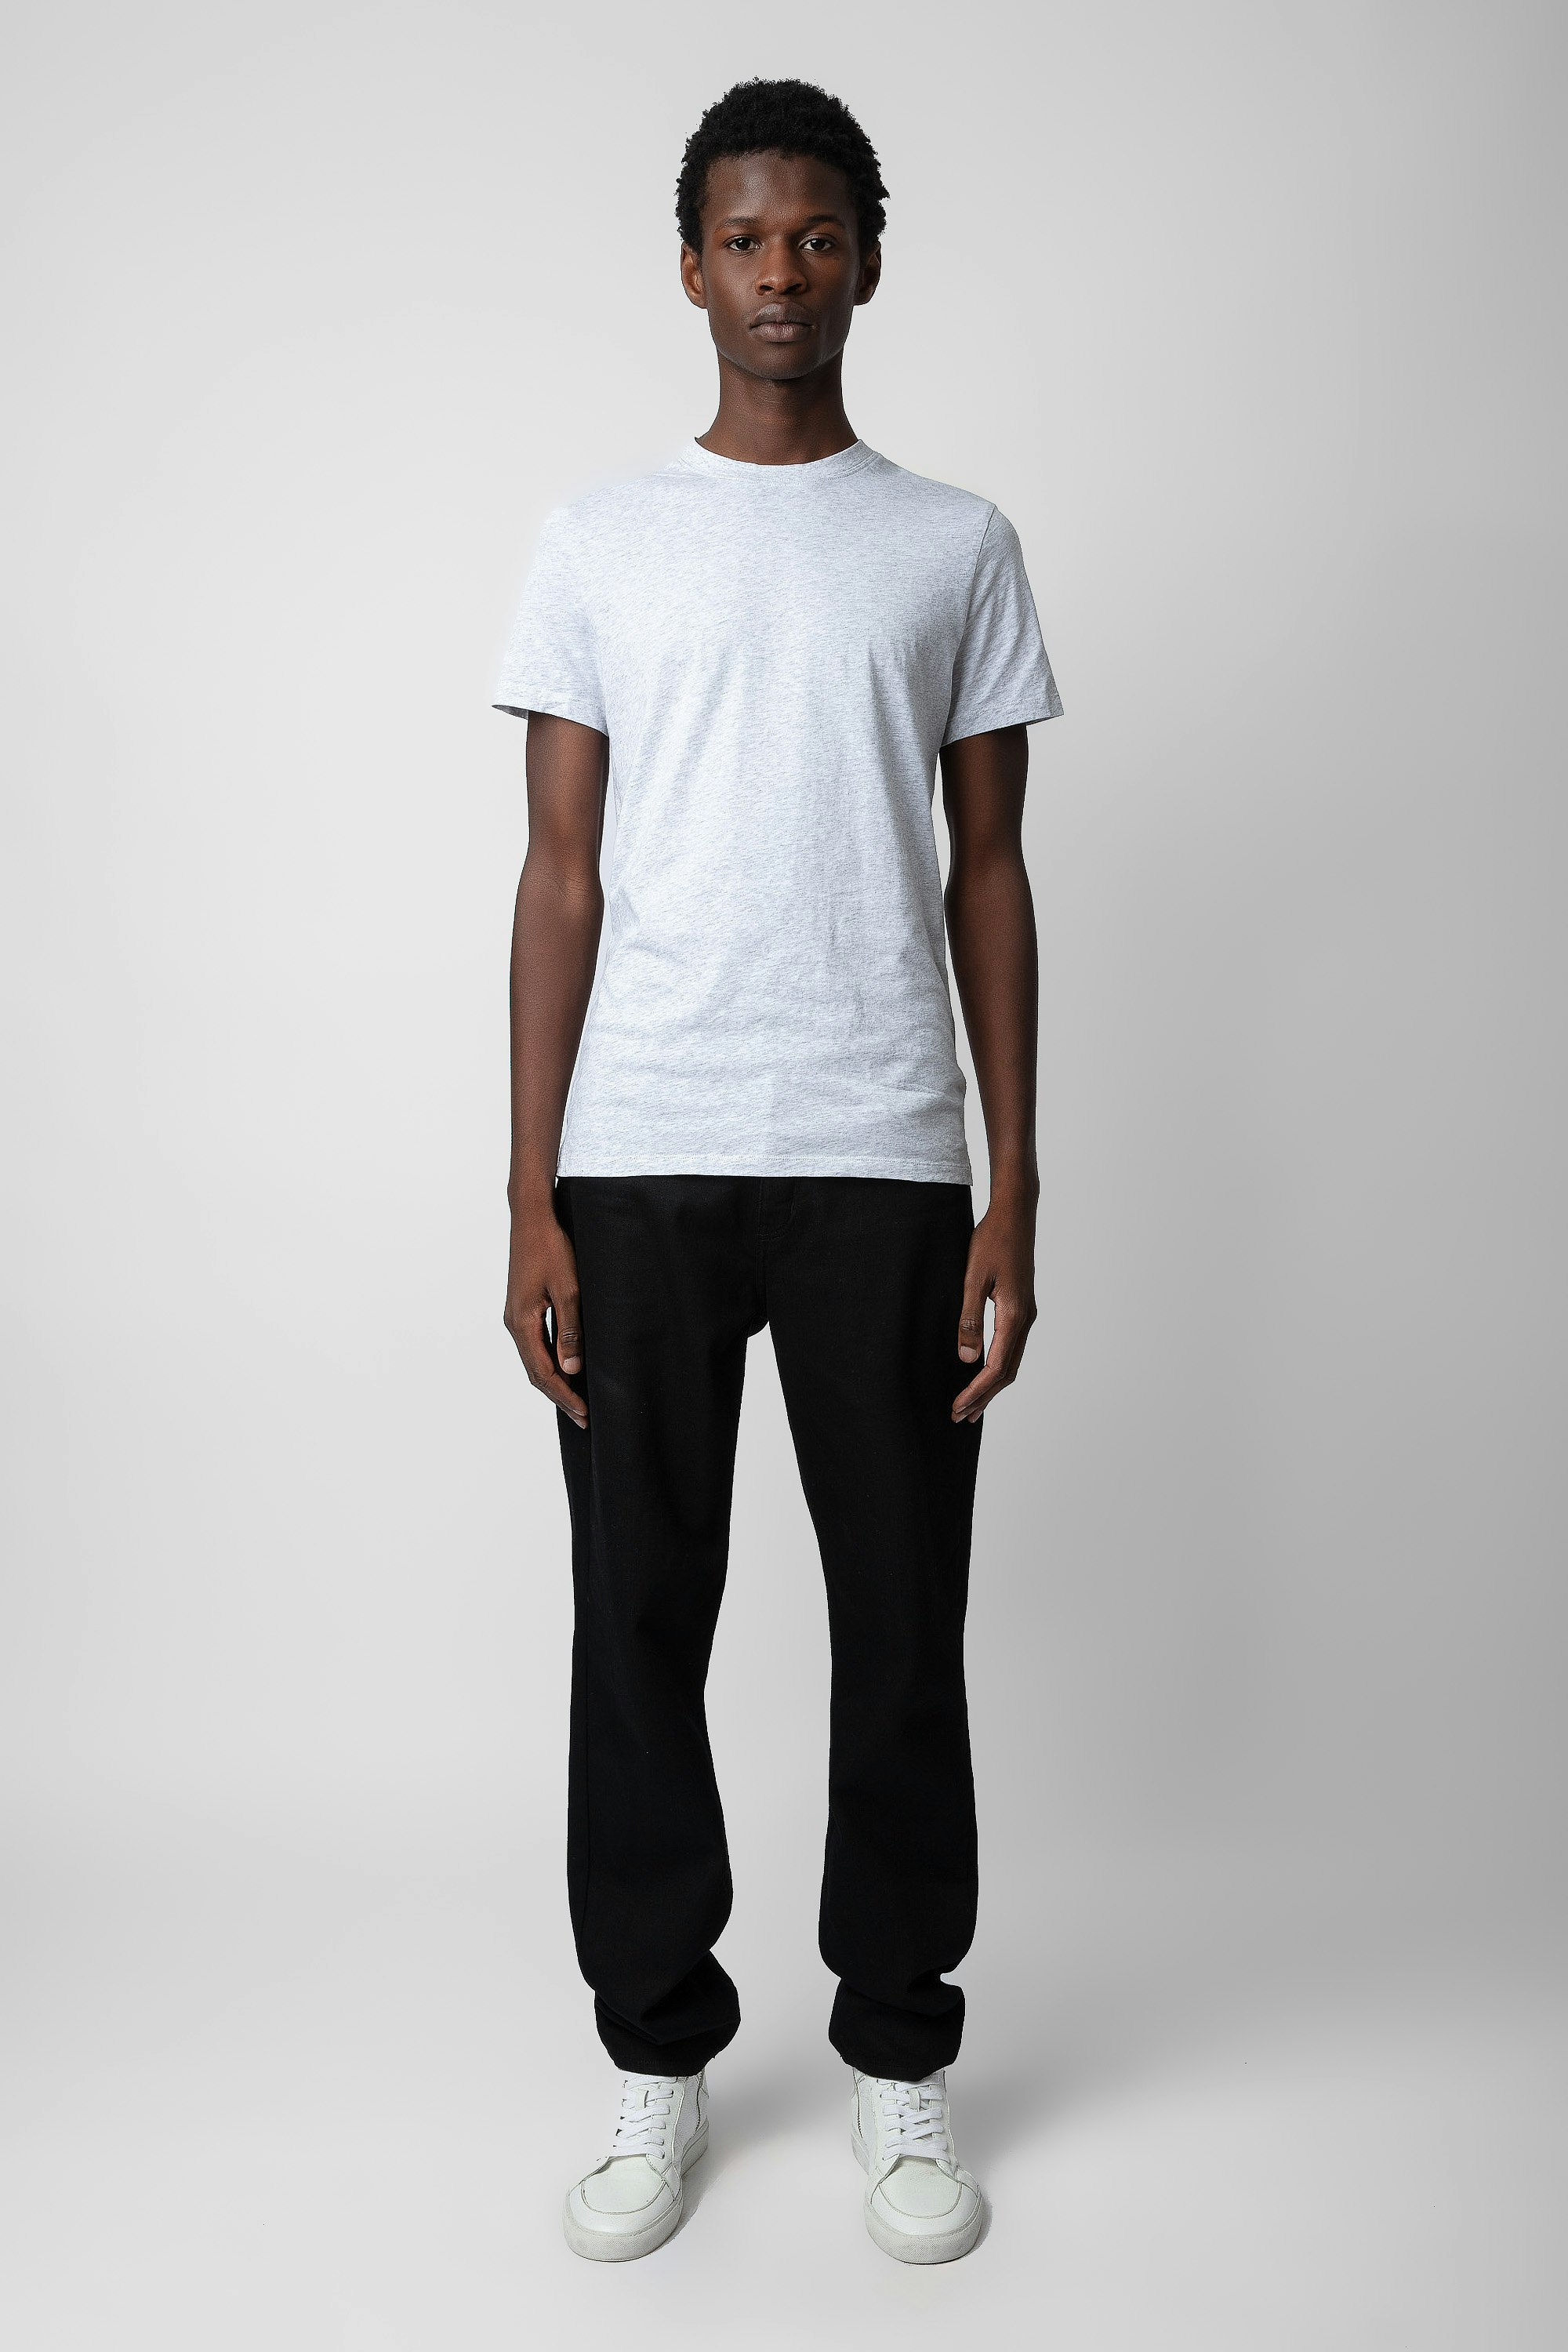 Ted T-Shirt - Men’s grey marl cotton T-shirt with “C’est la faute à Voltaire” photoprint.